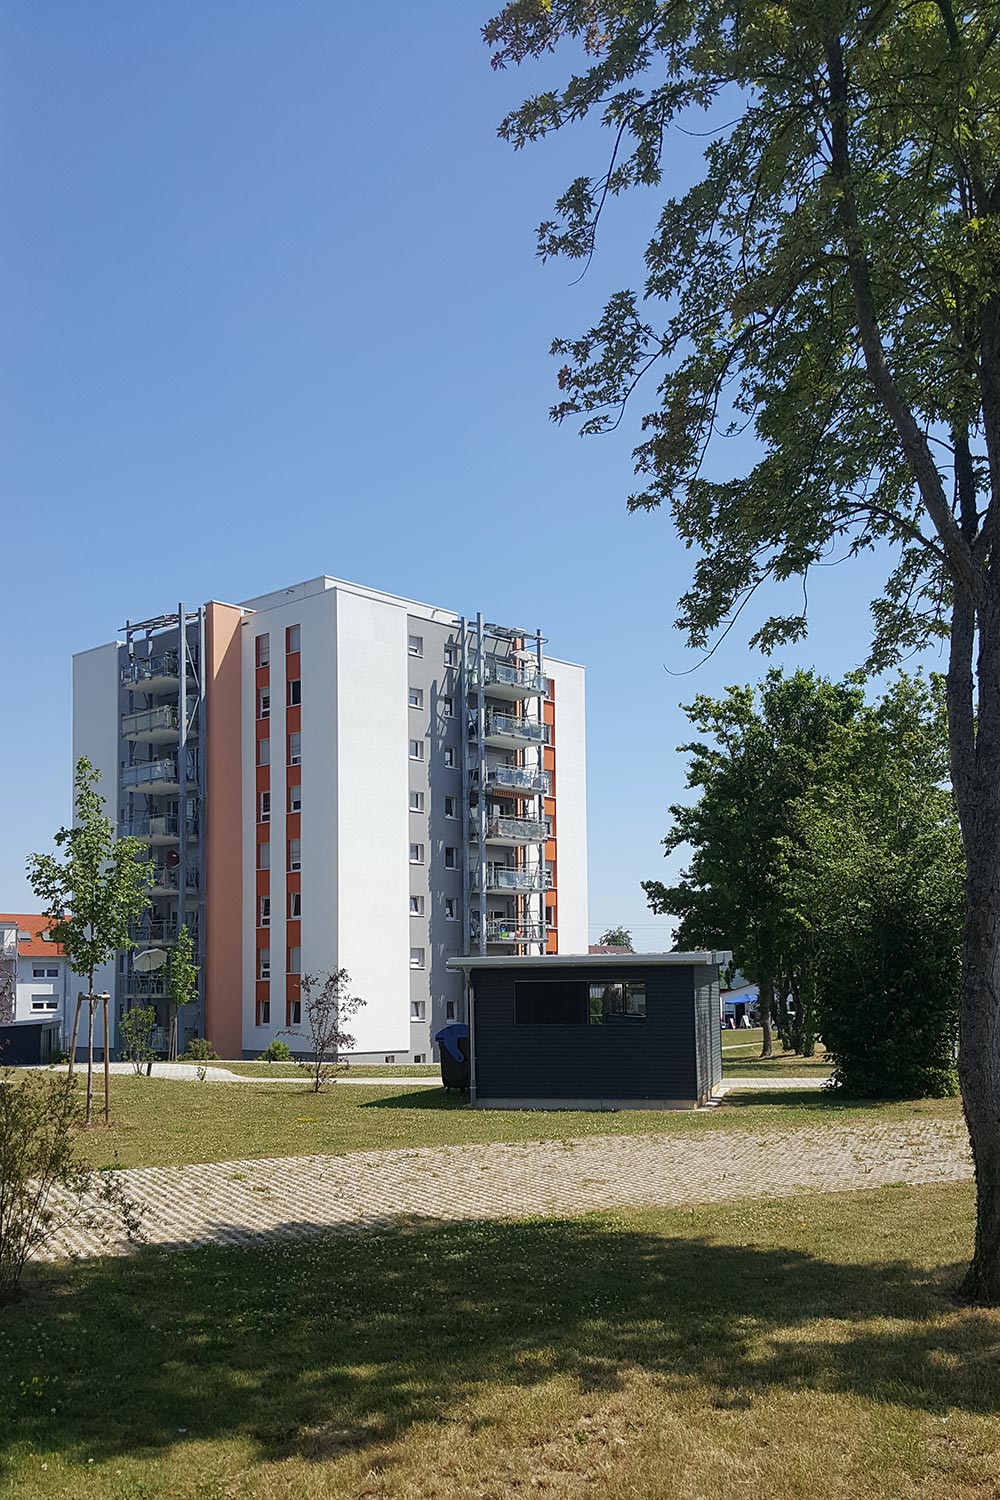 Altbau & Sarnierung | LEINS HOLZBAU in Bietenhausen / Rangendingen | Zimmerei und Innenausbau